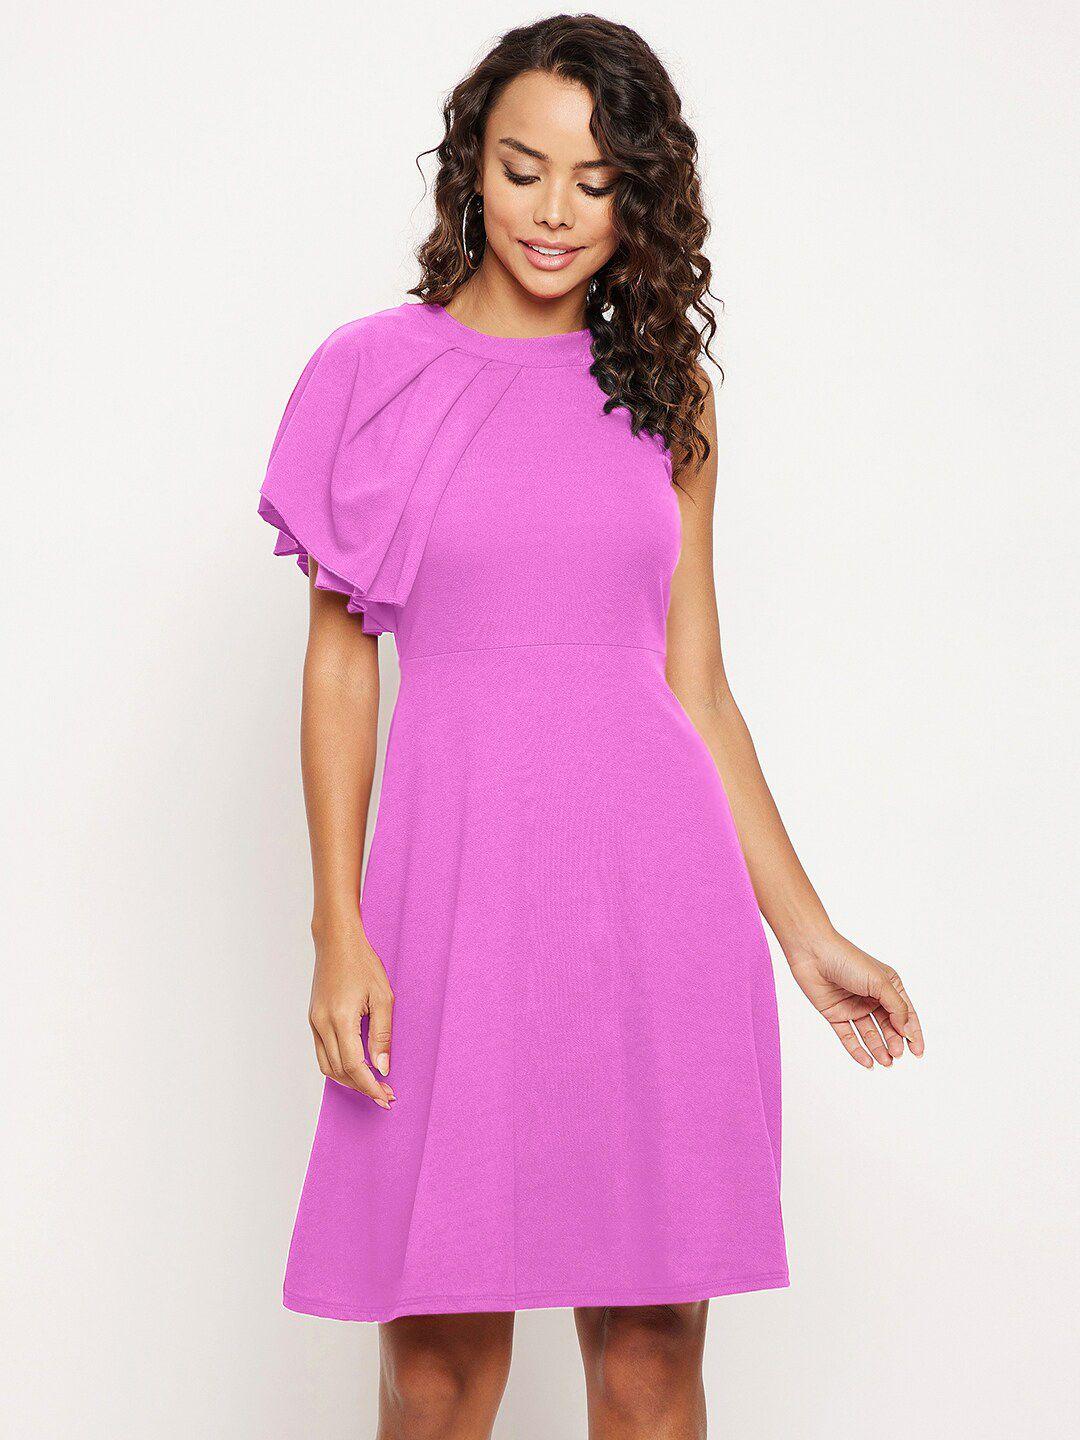 uptownie lite purple dress